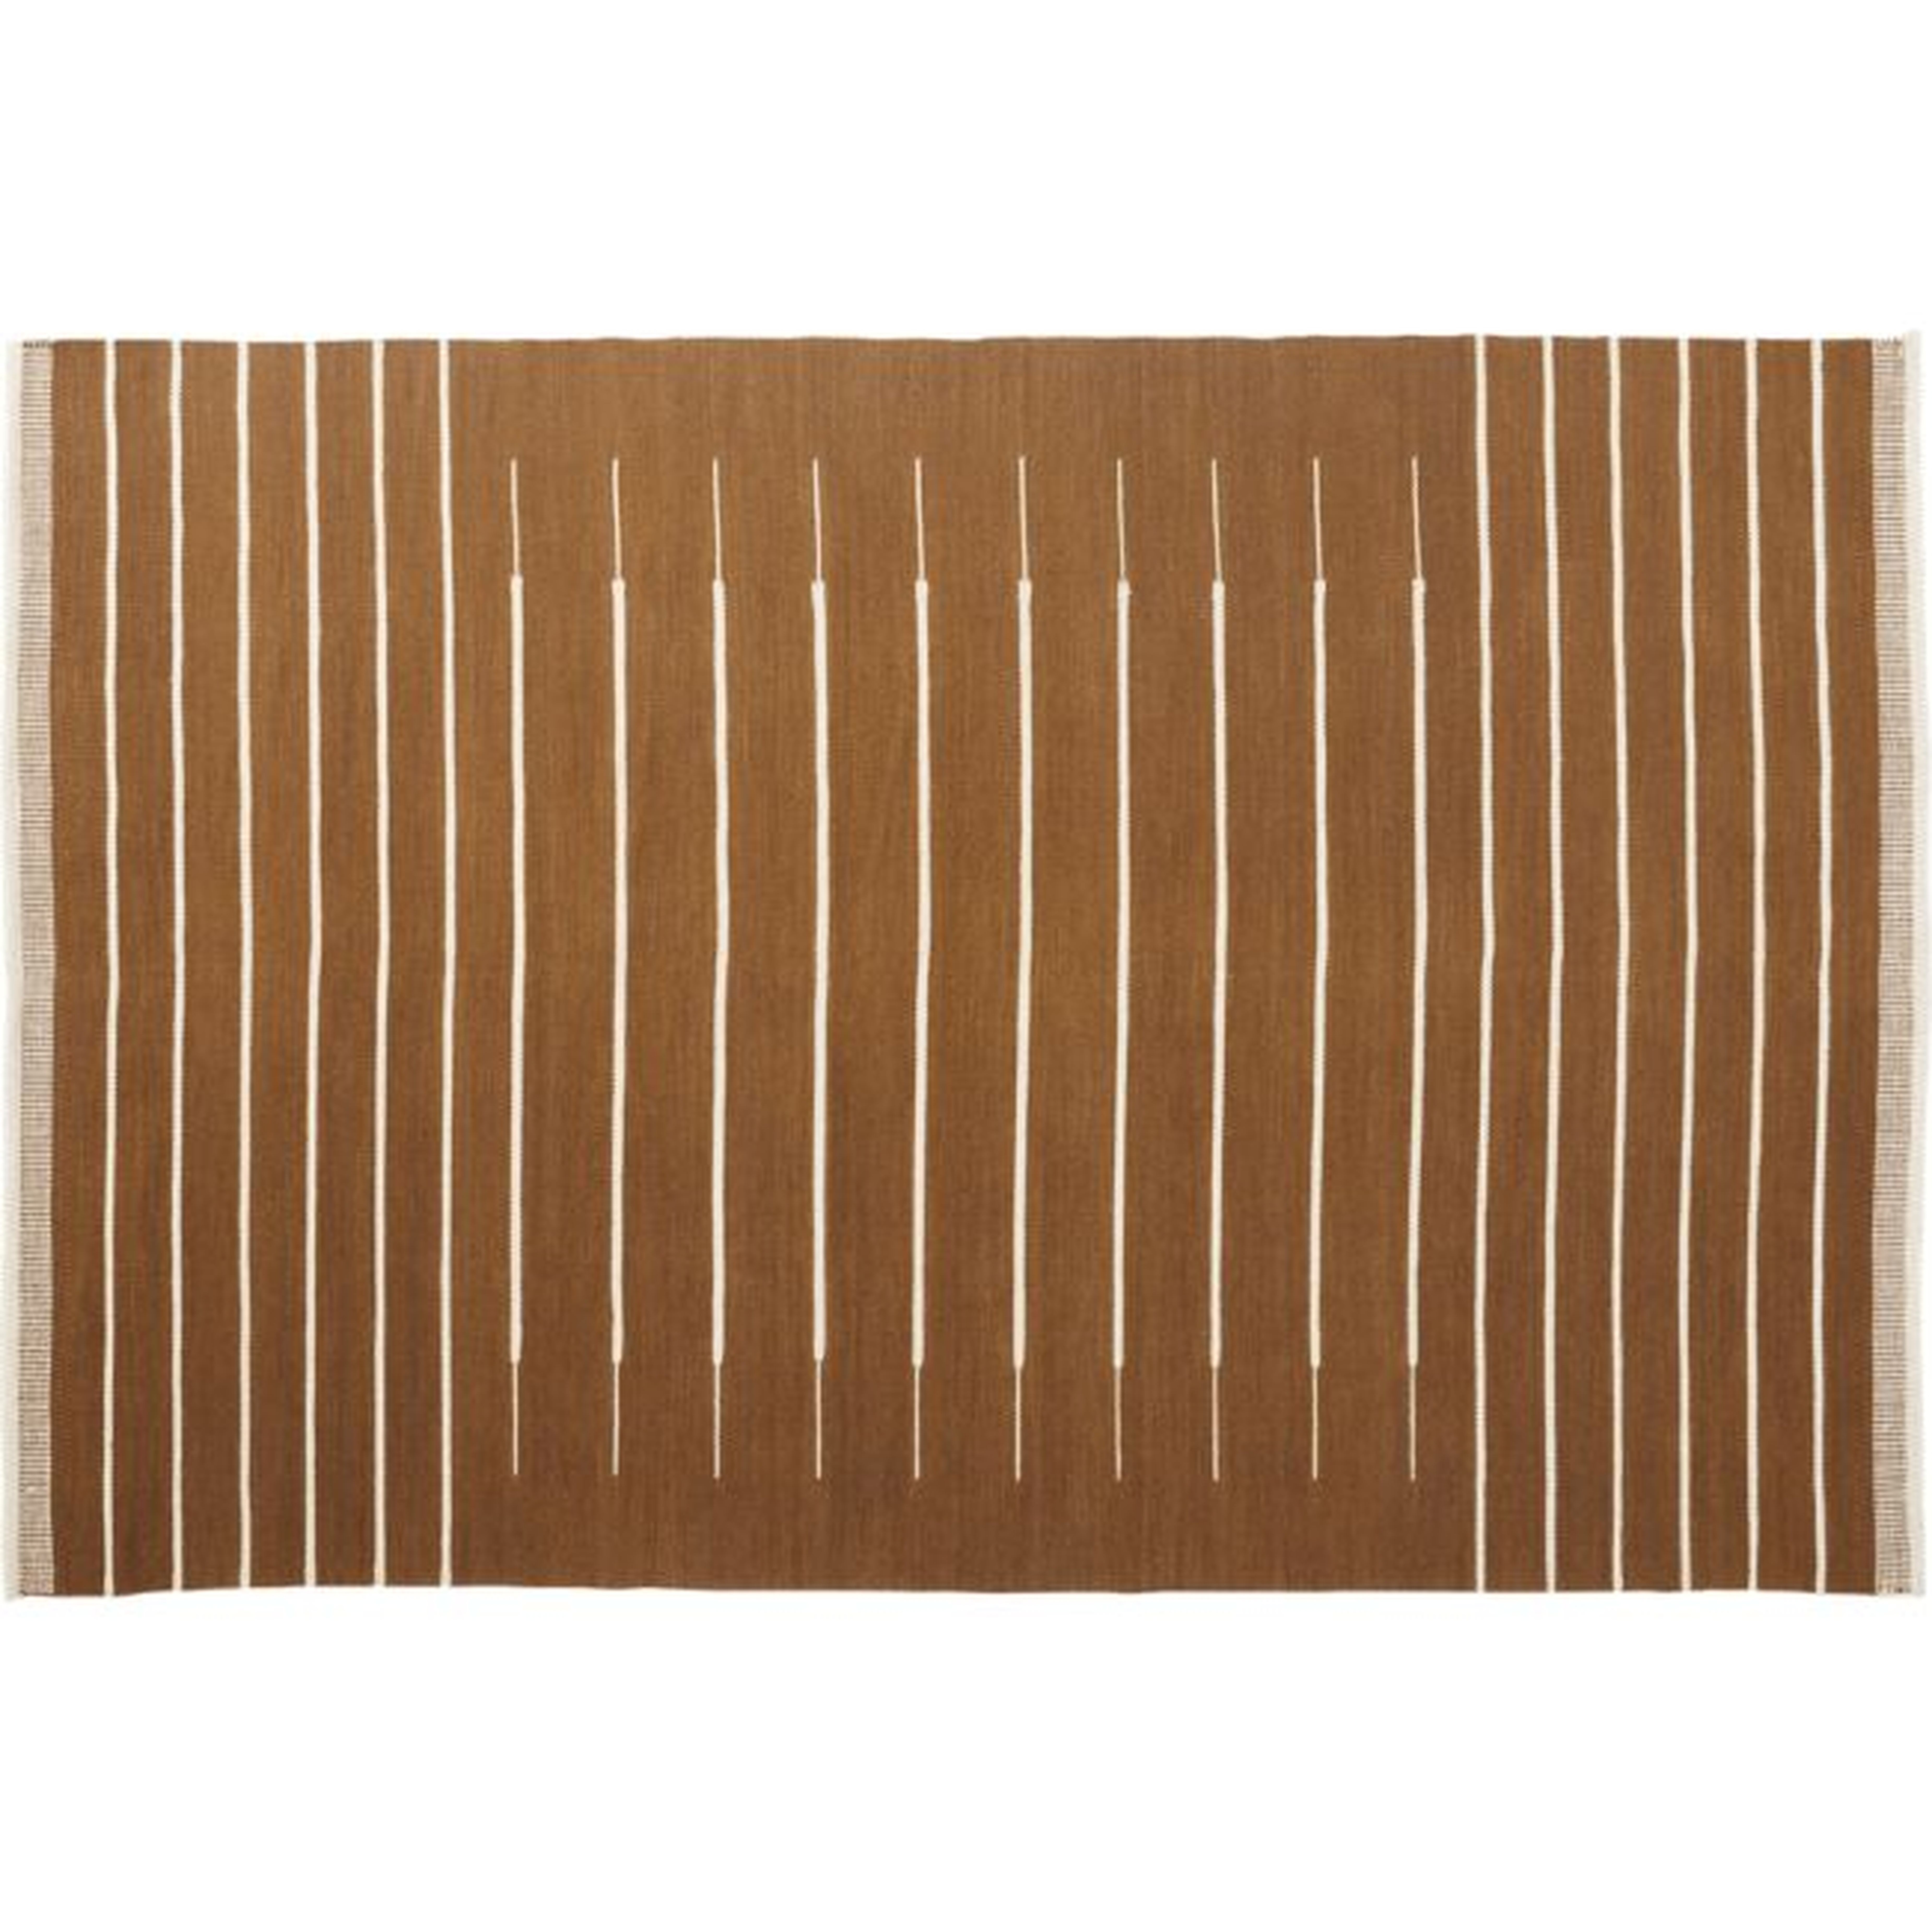 Copper with White Stripe Rug, 6' x 9' - CB2